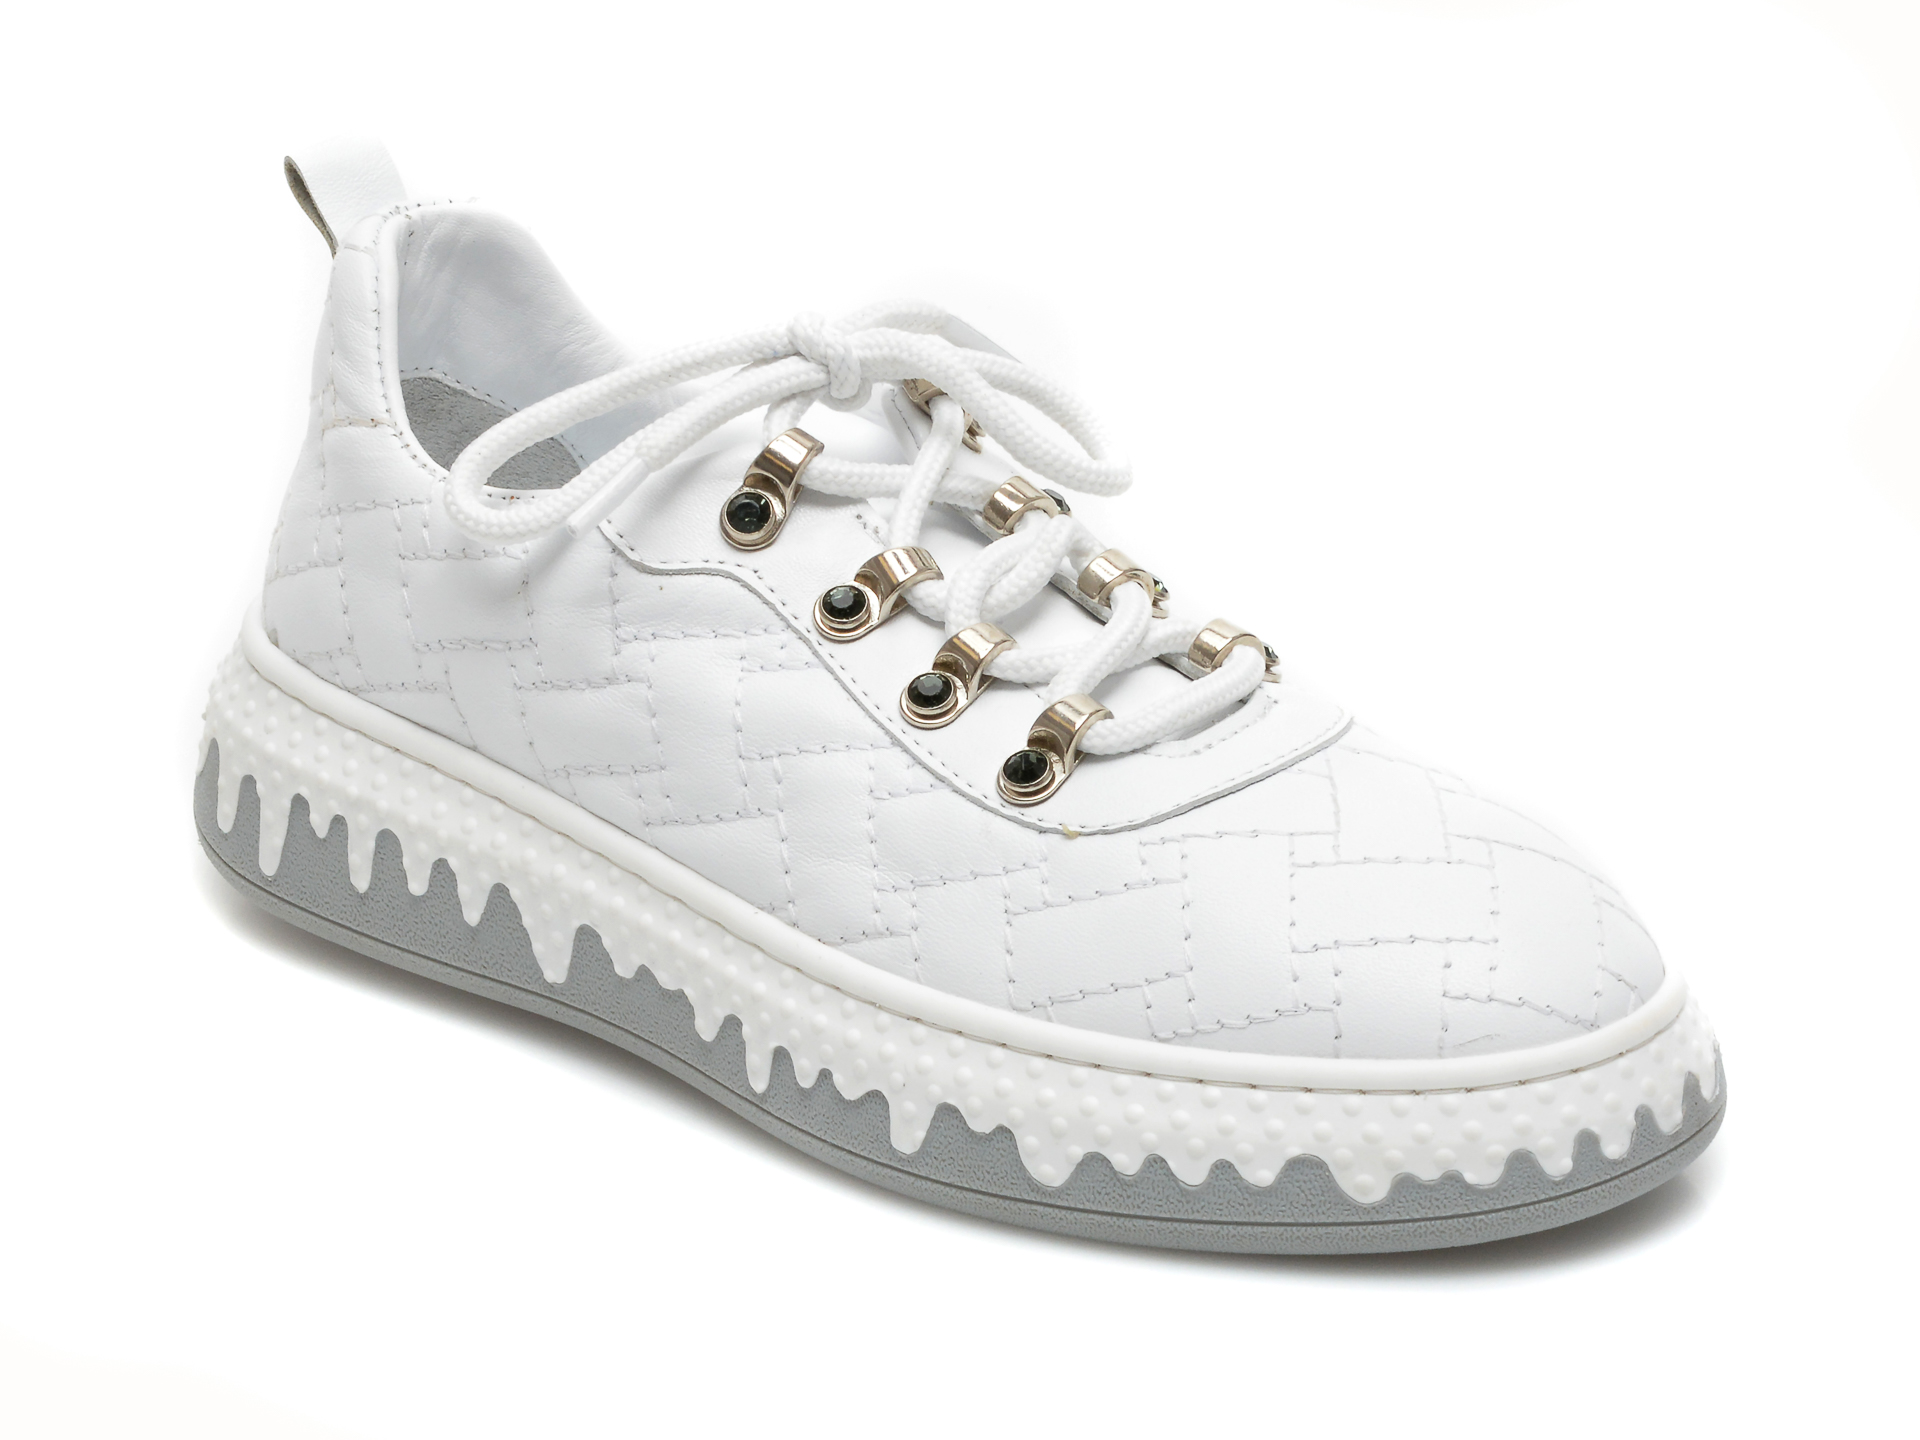 Pantofi FLAVIA PASSINI albi, 5404, din piele naturala Flavia Passini imagine noua